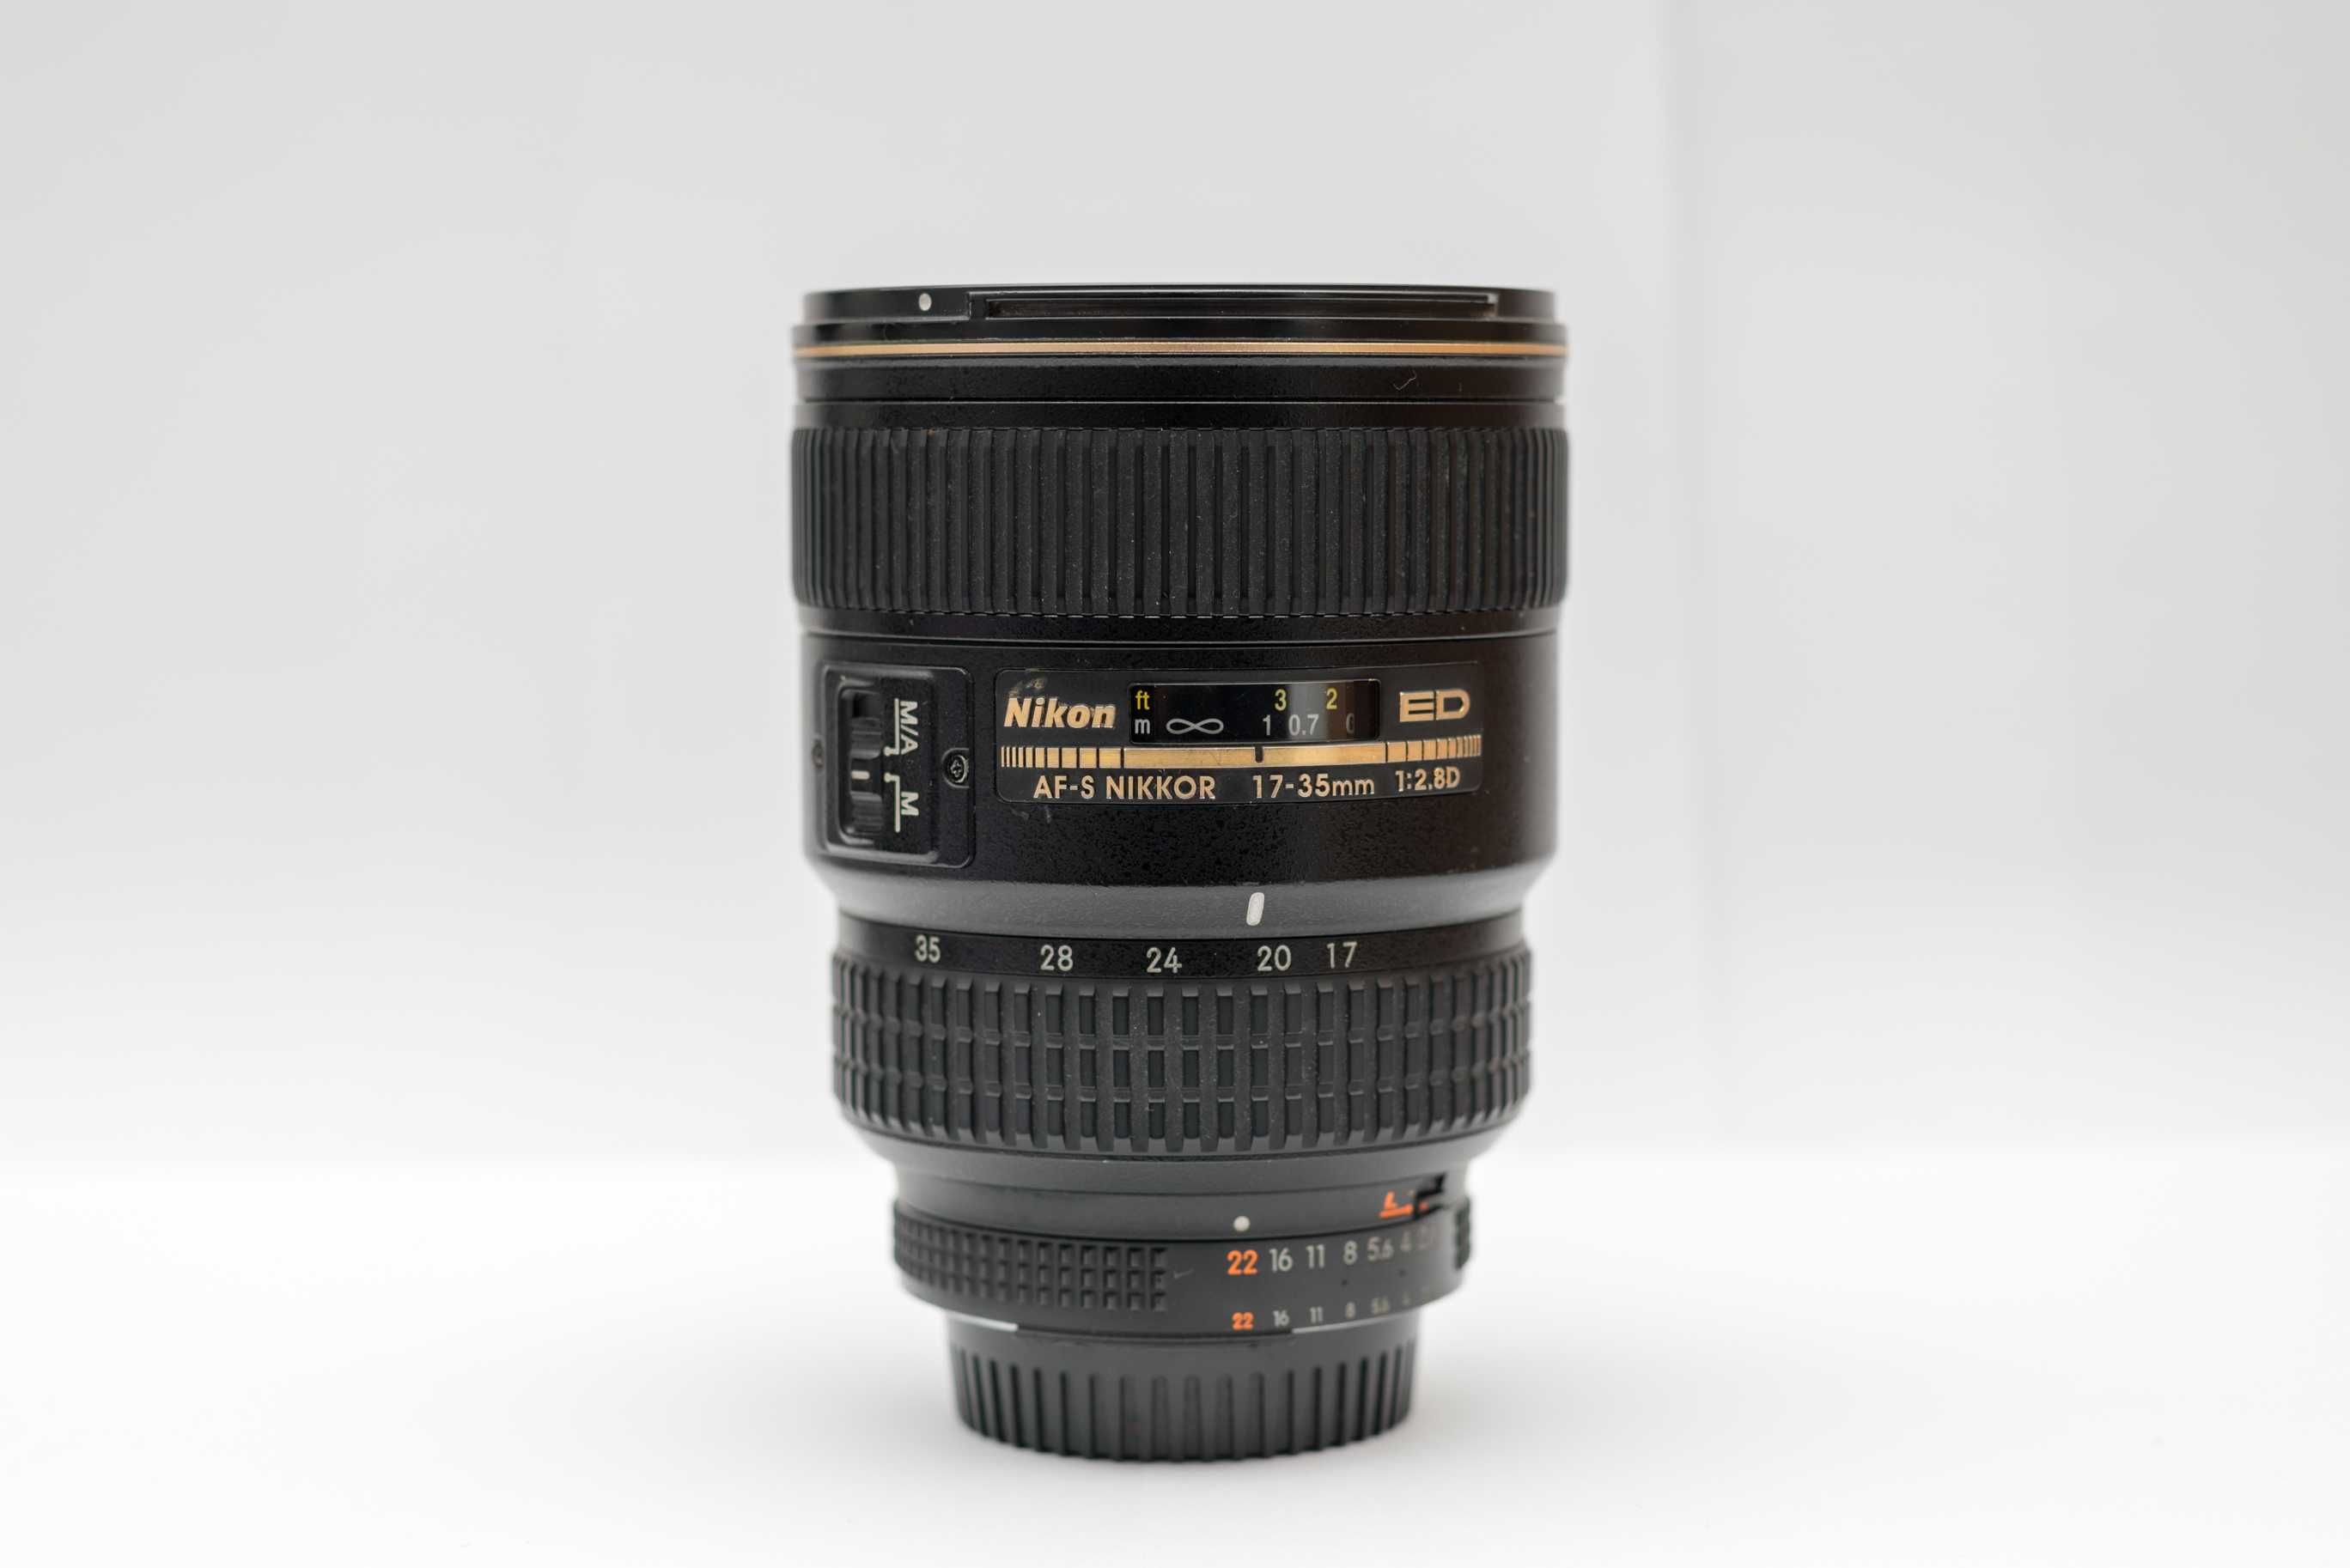 Obiectiv Nikon 17-35, f 2.8, cu focus manual (auto focus defect)